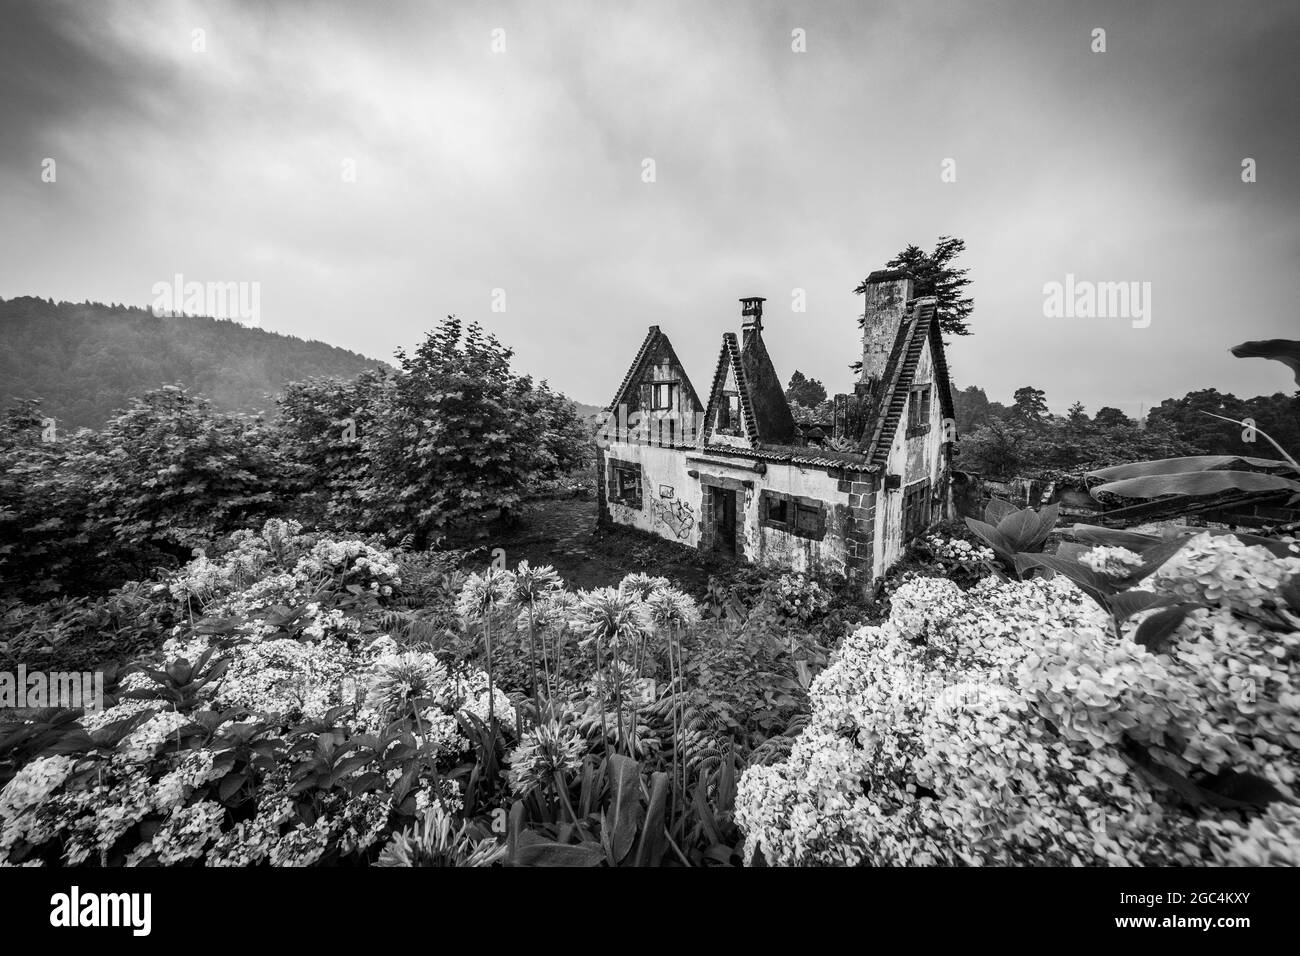 Bâtiment en noir et blanc, ruine, avec des arbres autour, destination de voyage Açores. Banque D'Images